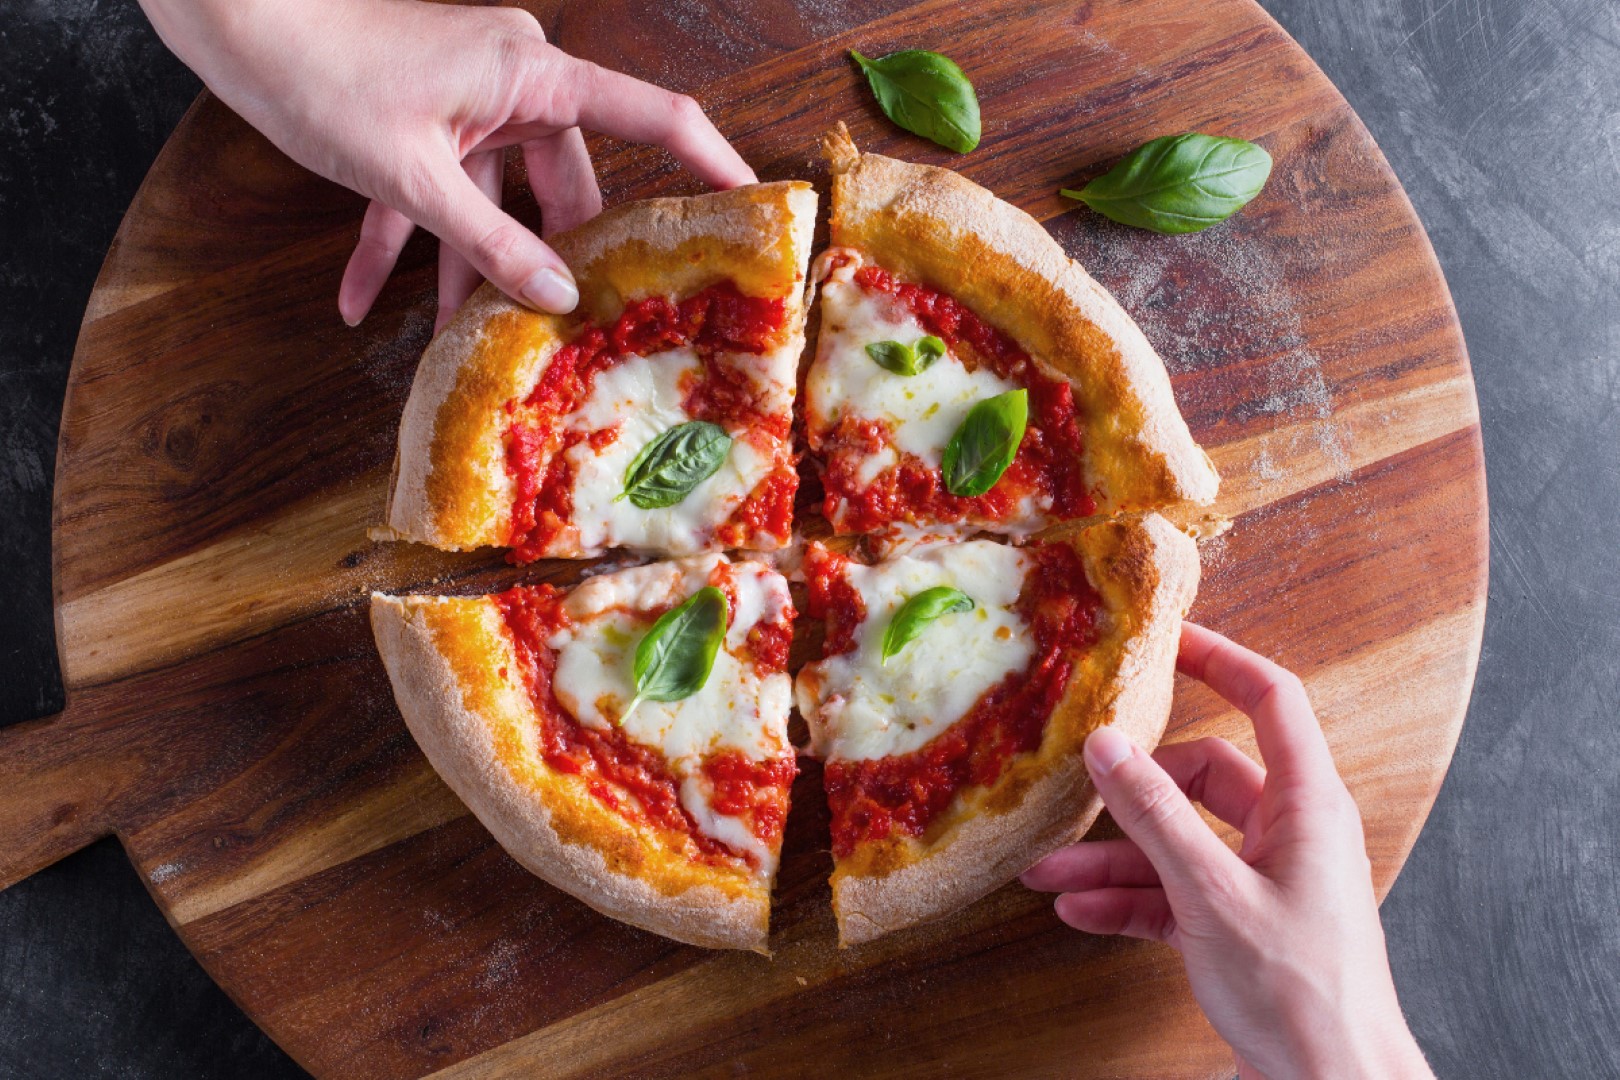 Kiekvieną dieną milijardai žmonių visame pasaulyje gamina arba užsisako picas į namus. Tai labai paprastas patiekalas – tarsi pyragas su pomidorų griežinėliais, lydytu sūriu ir kitais ingredientais.